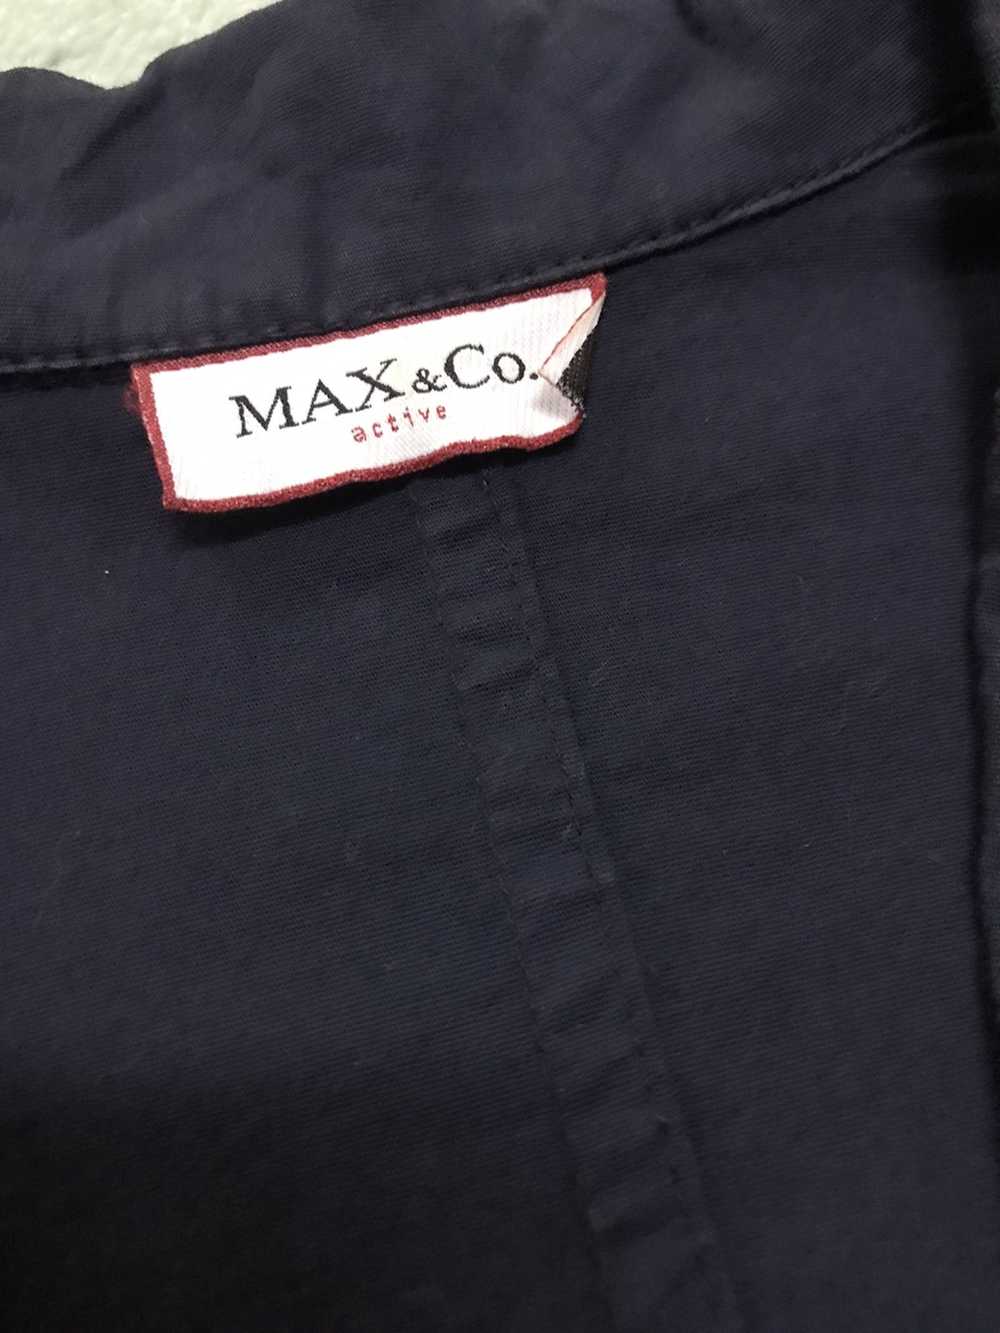 Max & Co. Max & Co Blazer - image 5